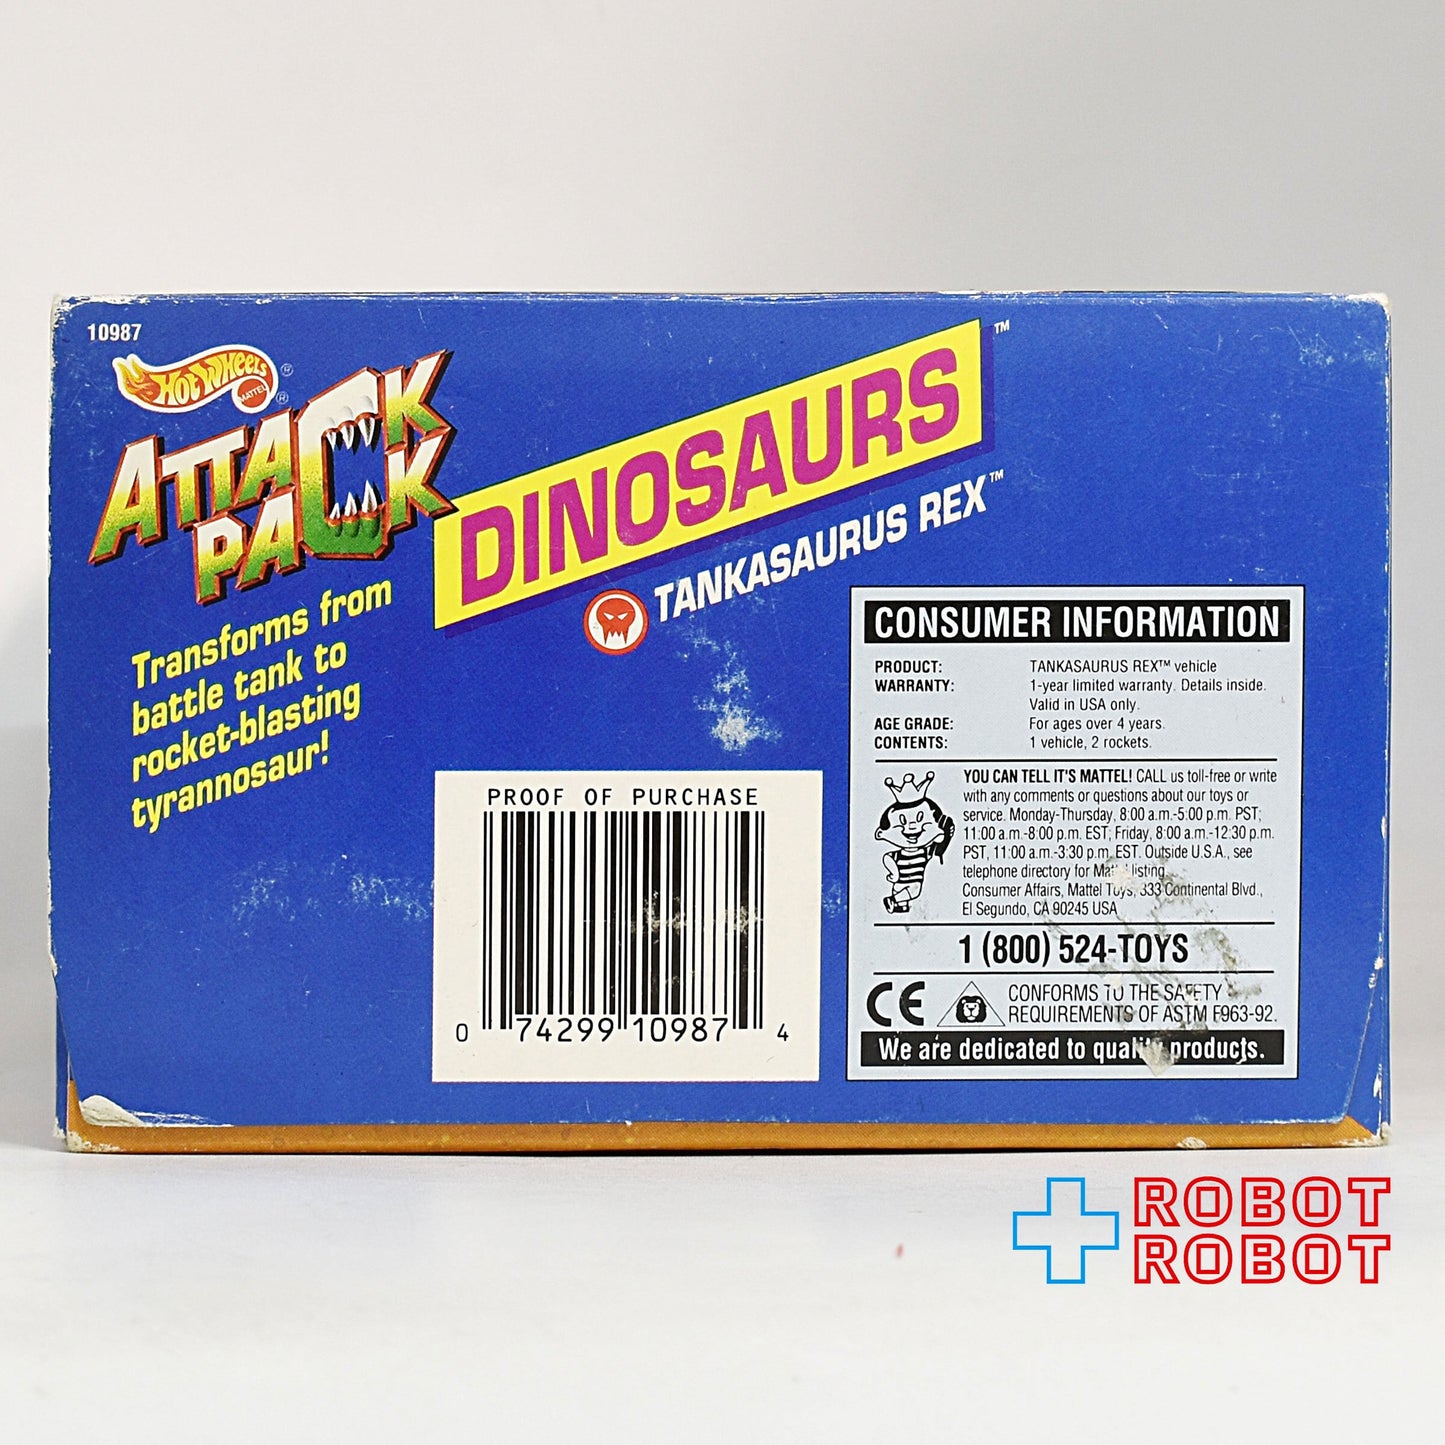 ホットウィール アタックパック タンカサウルス・レックス 1993 未開封